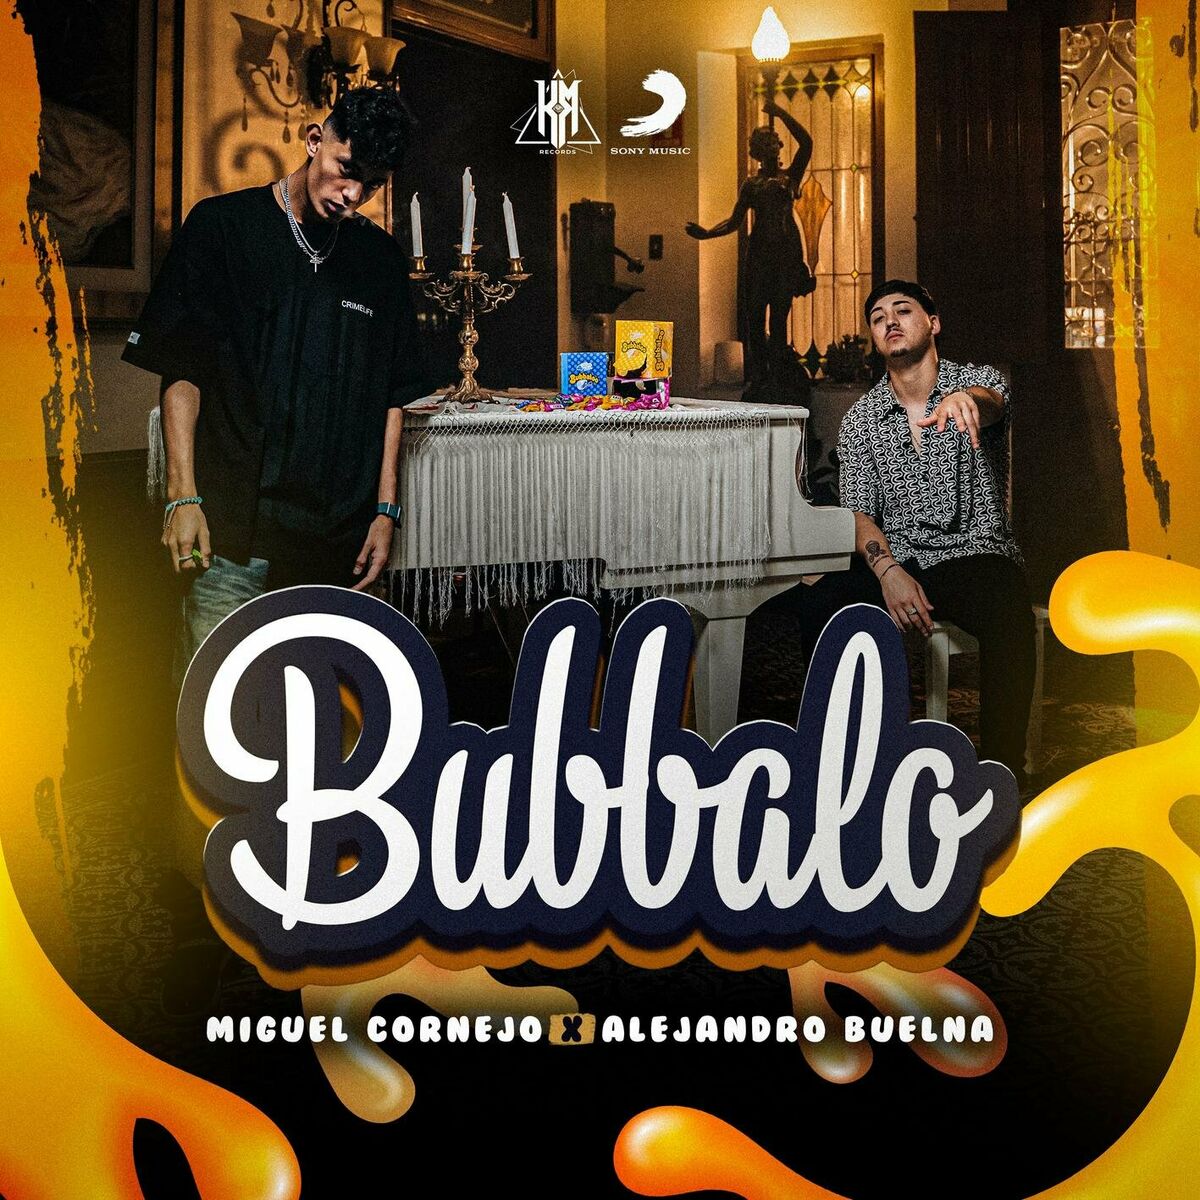 Bubbalo: Miguel Cornejo, Alejandro Buelna – Bubbalo